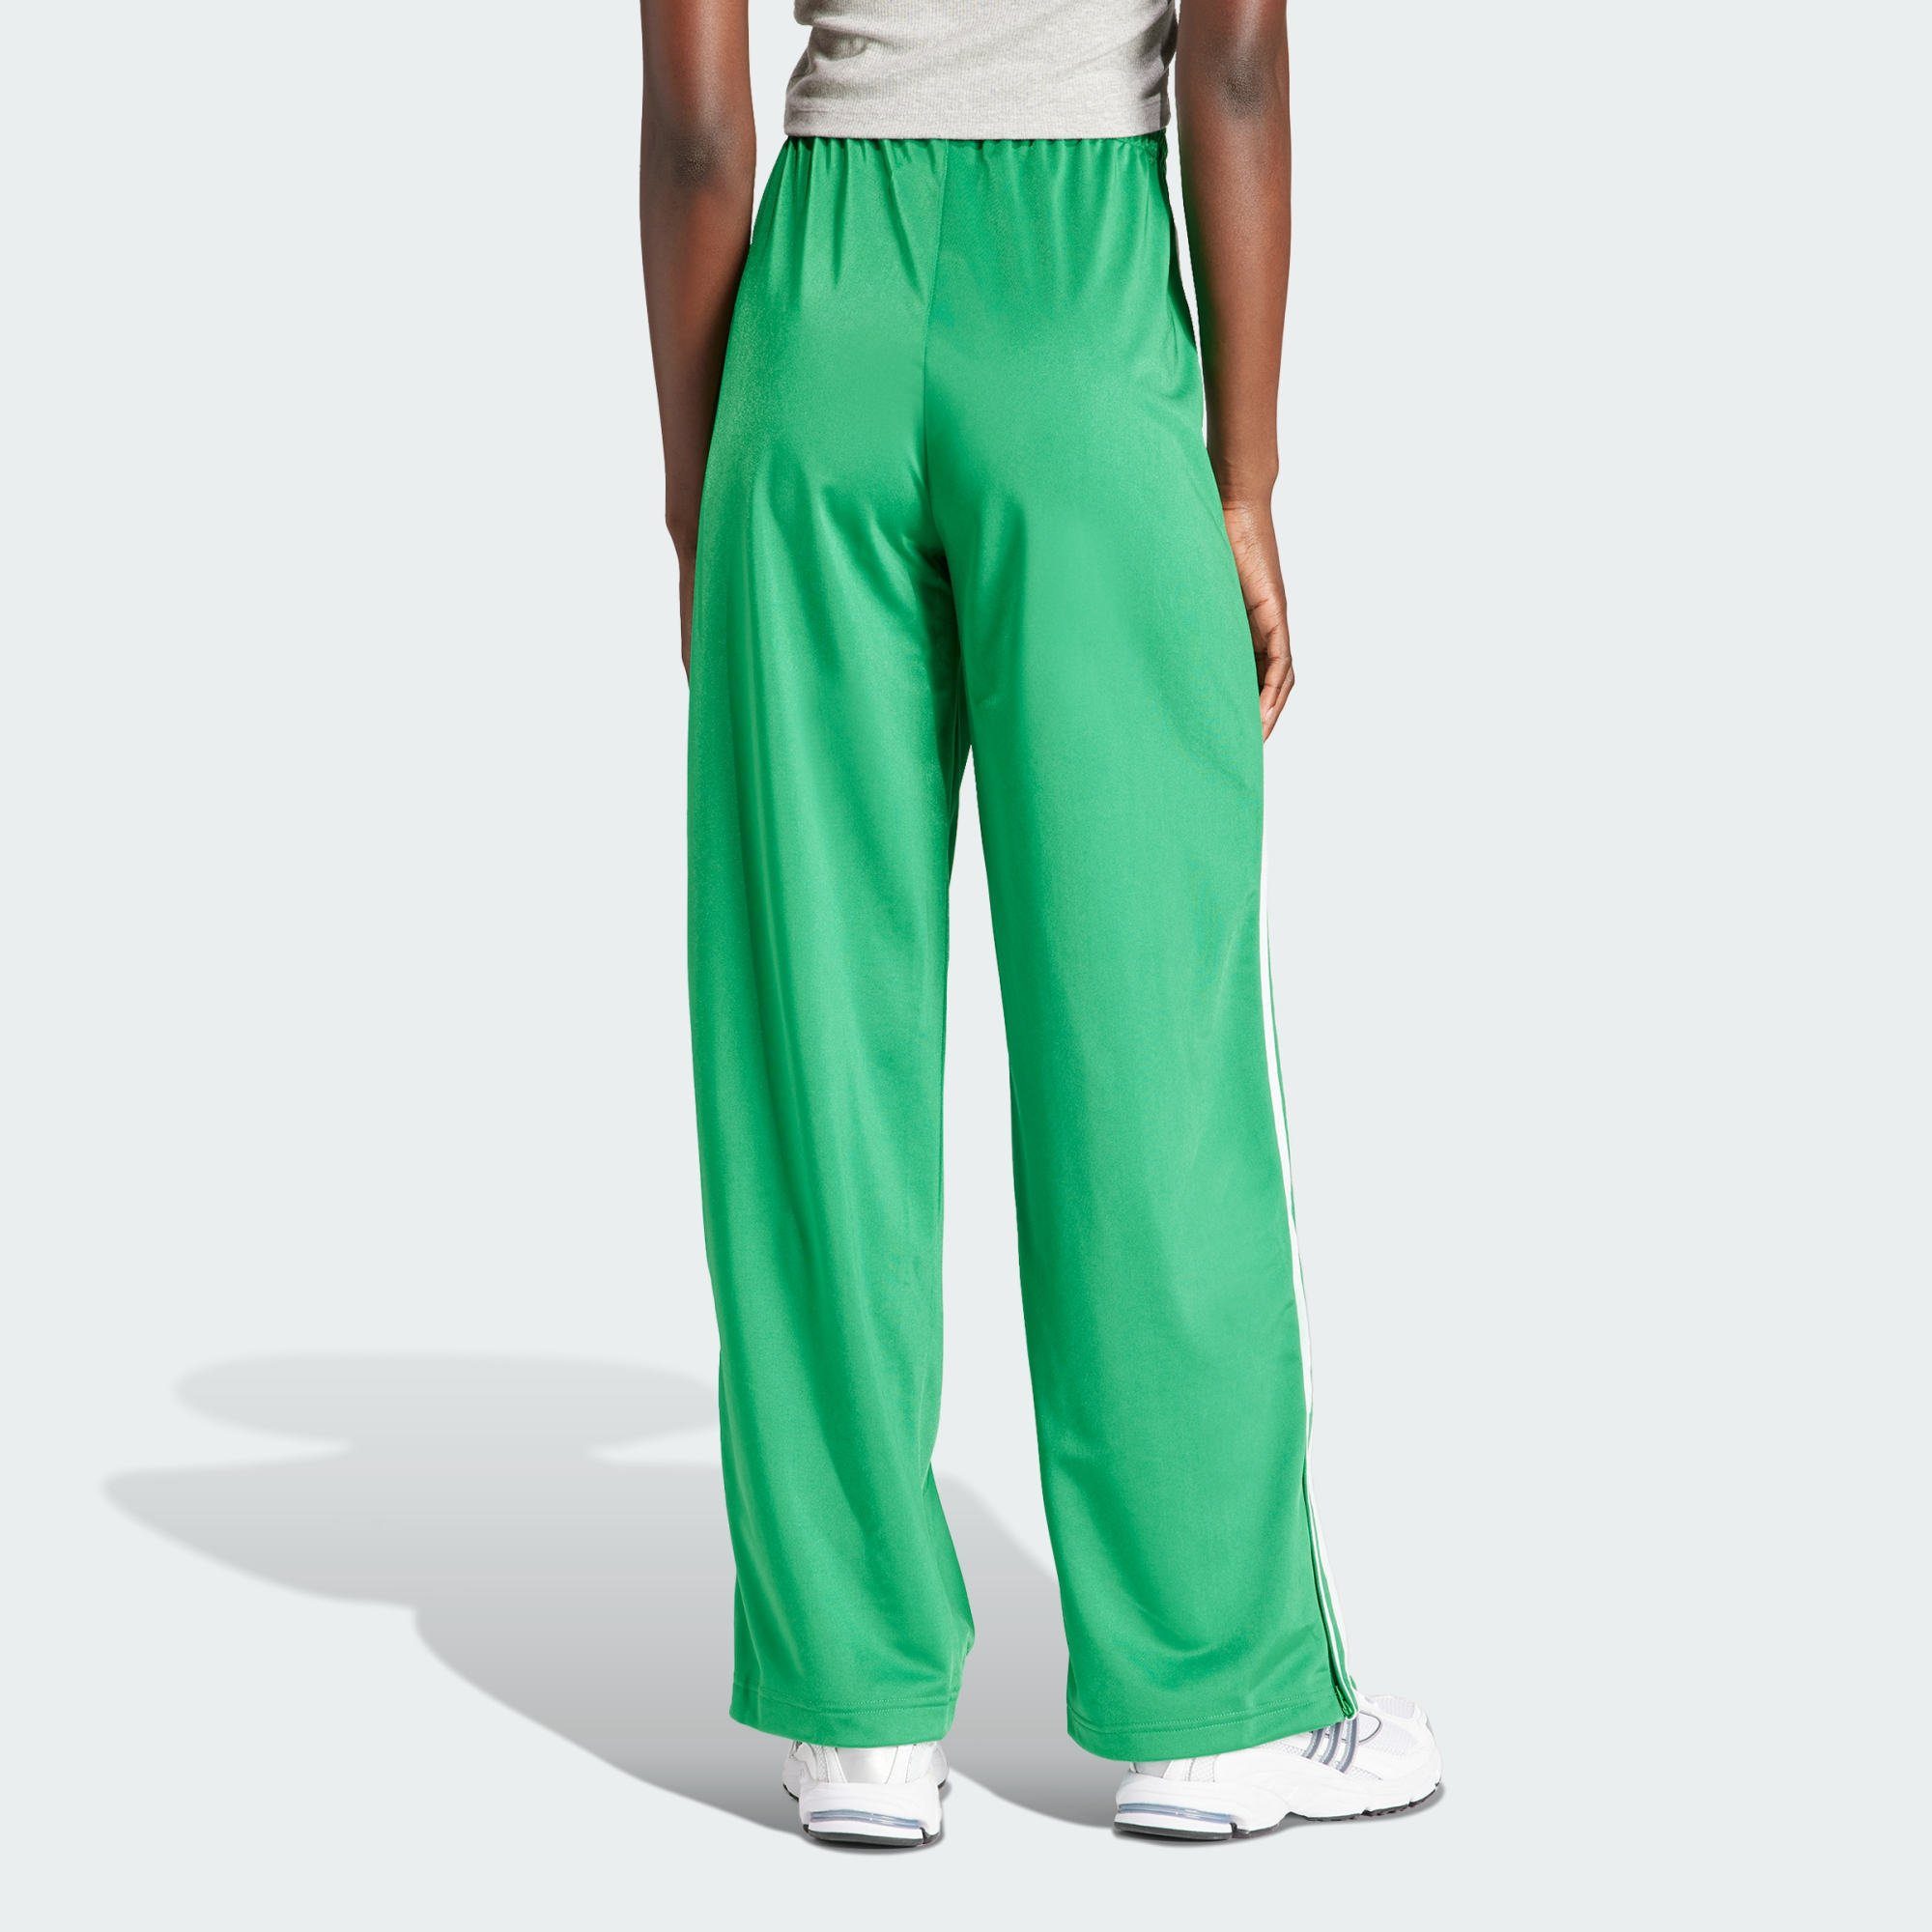 LOOSE Originals FIREBIRD Green Jogginghose adidas TRAININGSHOSE